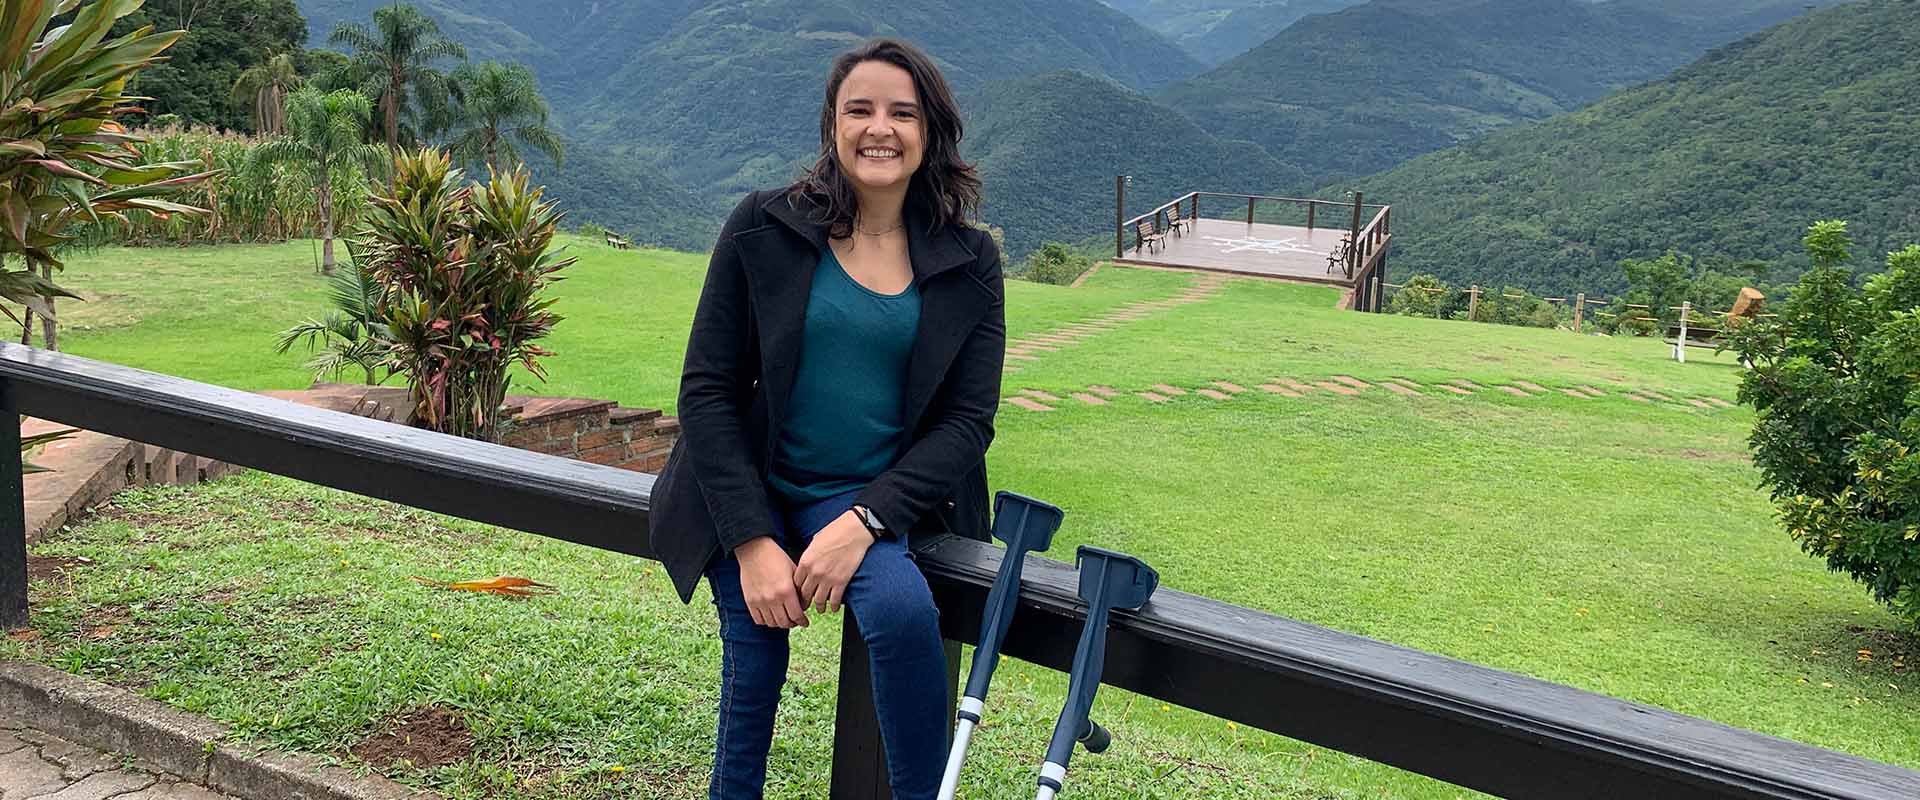 Embaixadora da Mercur, Jéssica Paula, cria guia de acessibilidade em Gramado/RS 